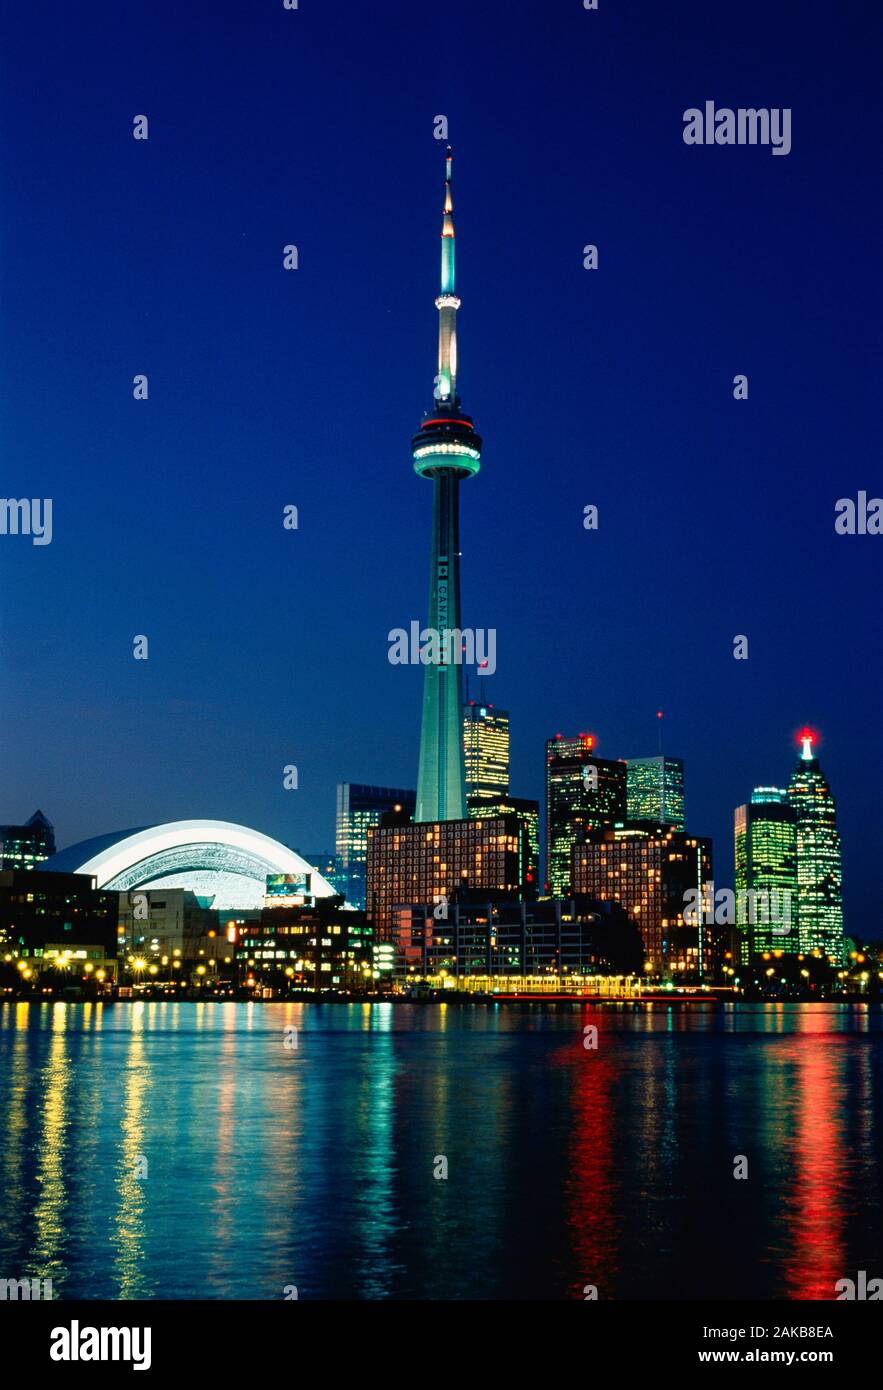 Toronto skyline with CN Tower at night, Ontario, Canada Stock Photo